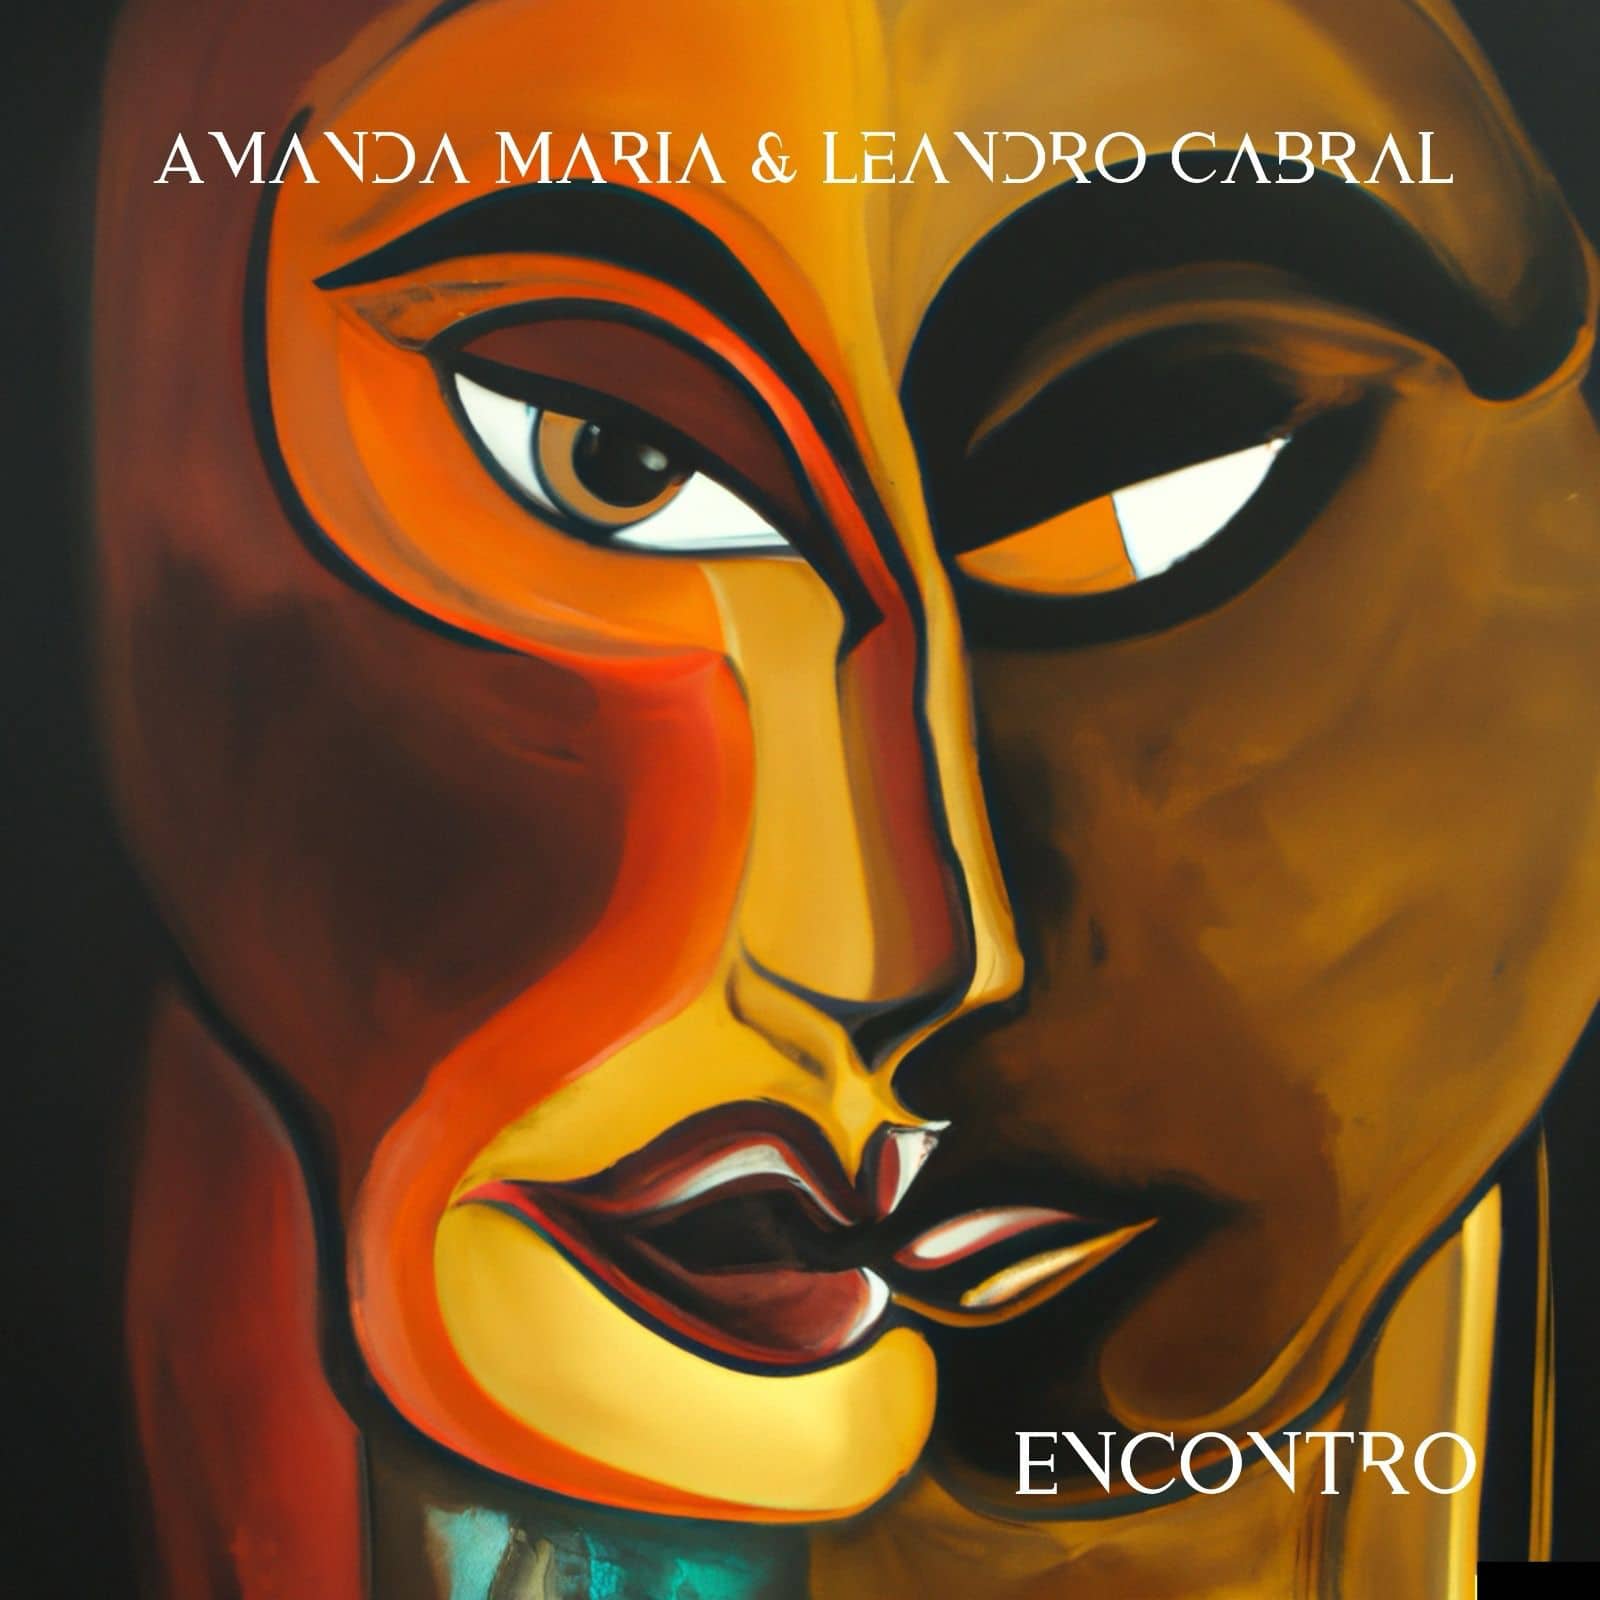 revistaprosaversoearte.com - Amanda Maria e Leandro Cabral lançam o primeiro EP 'Encontro'